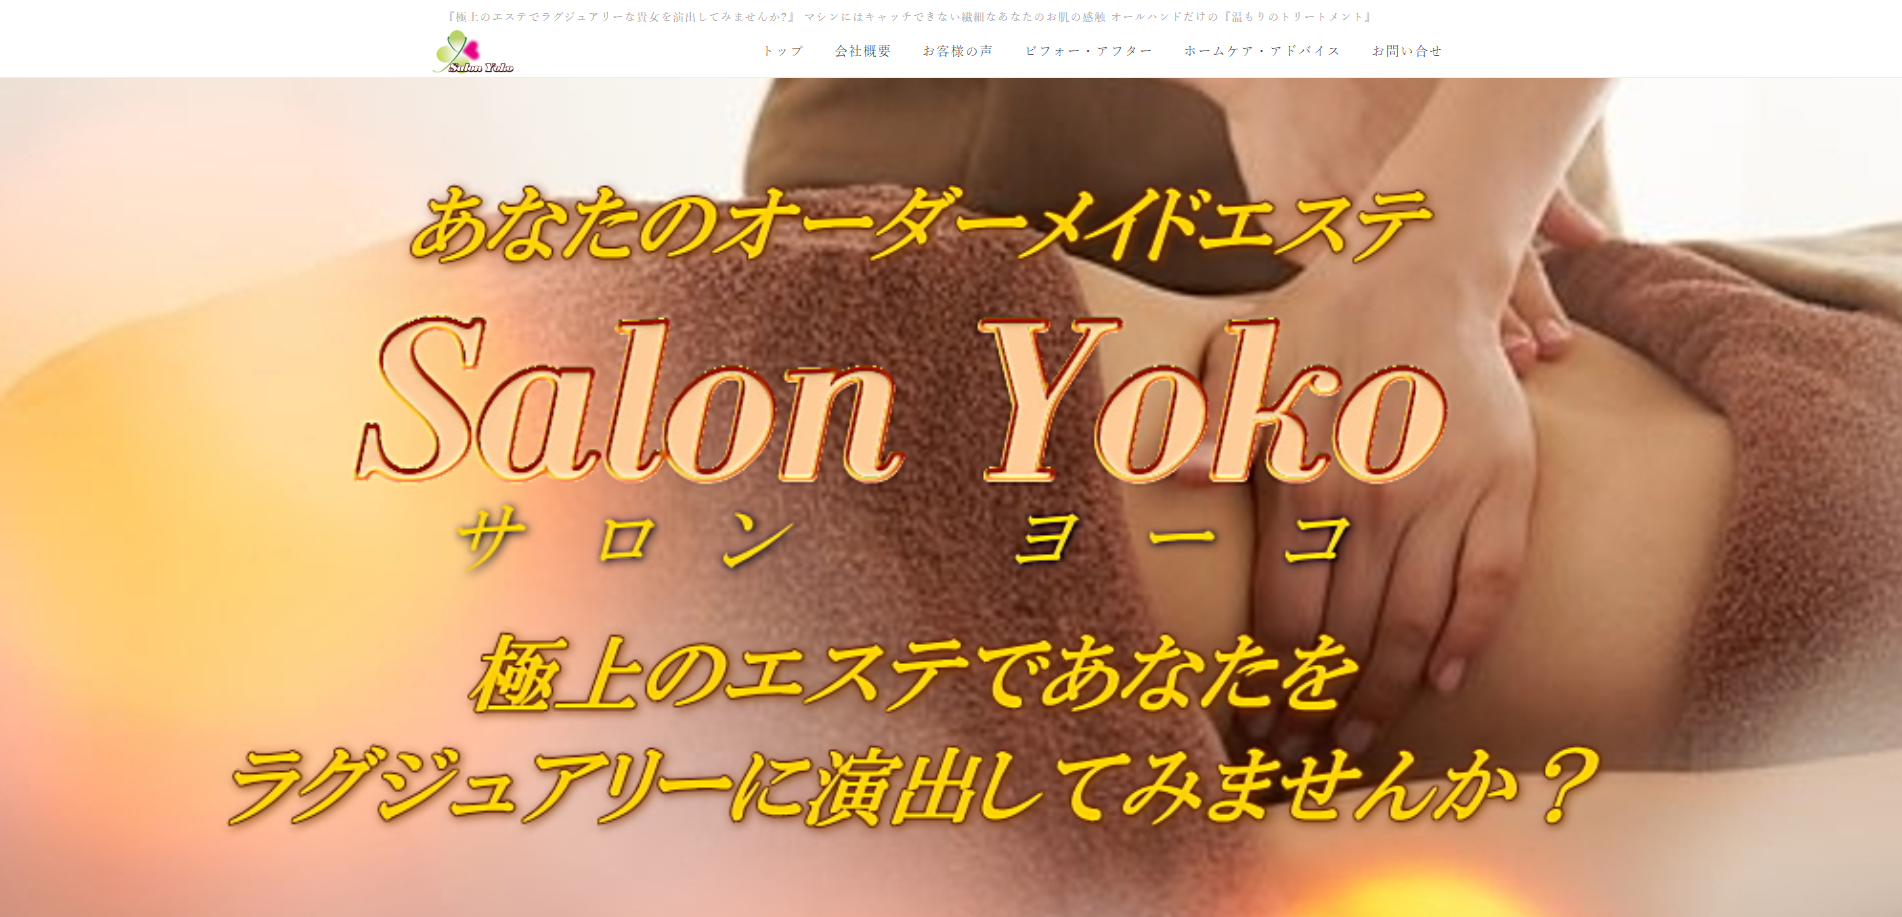 Salon Yoko